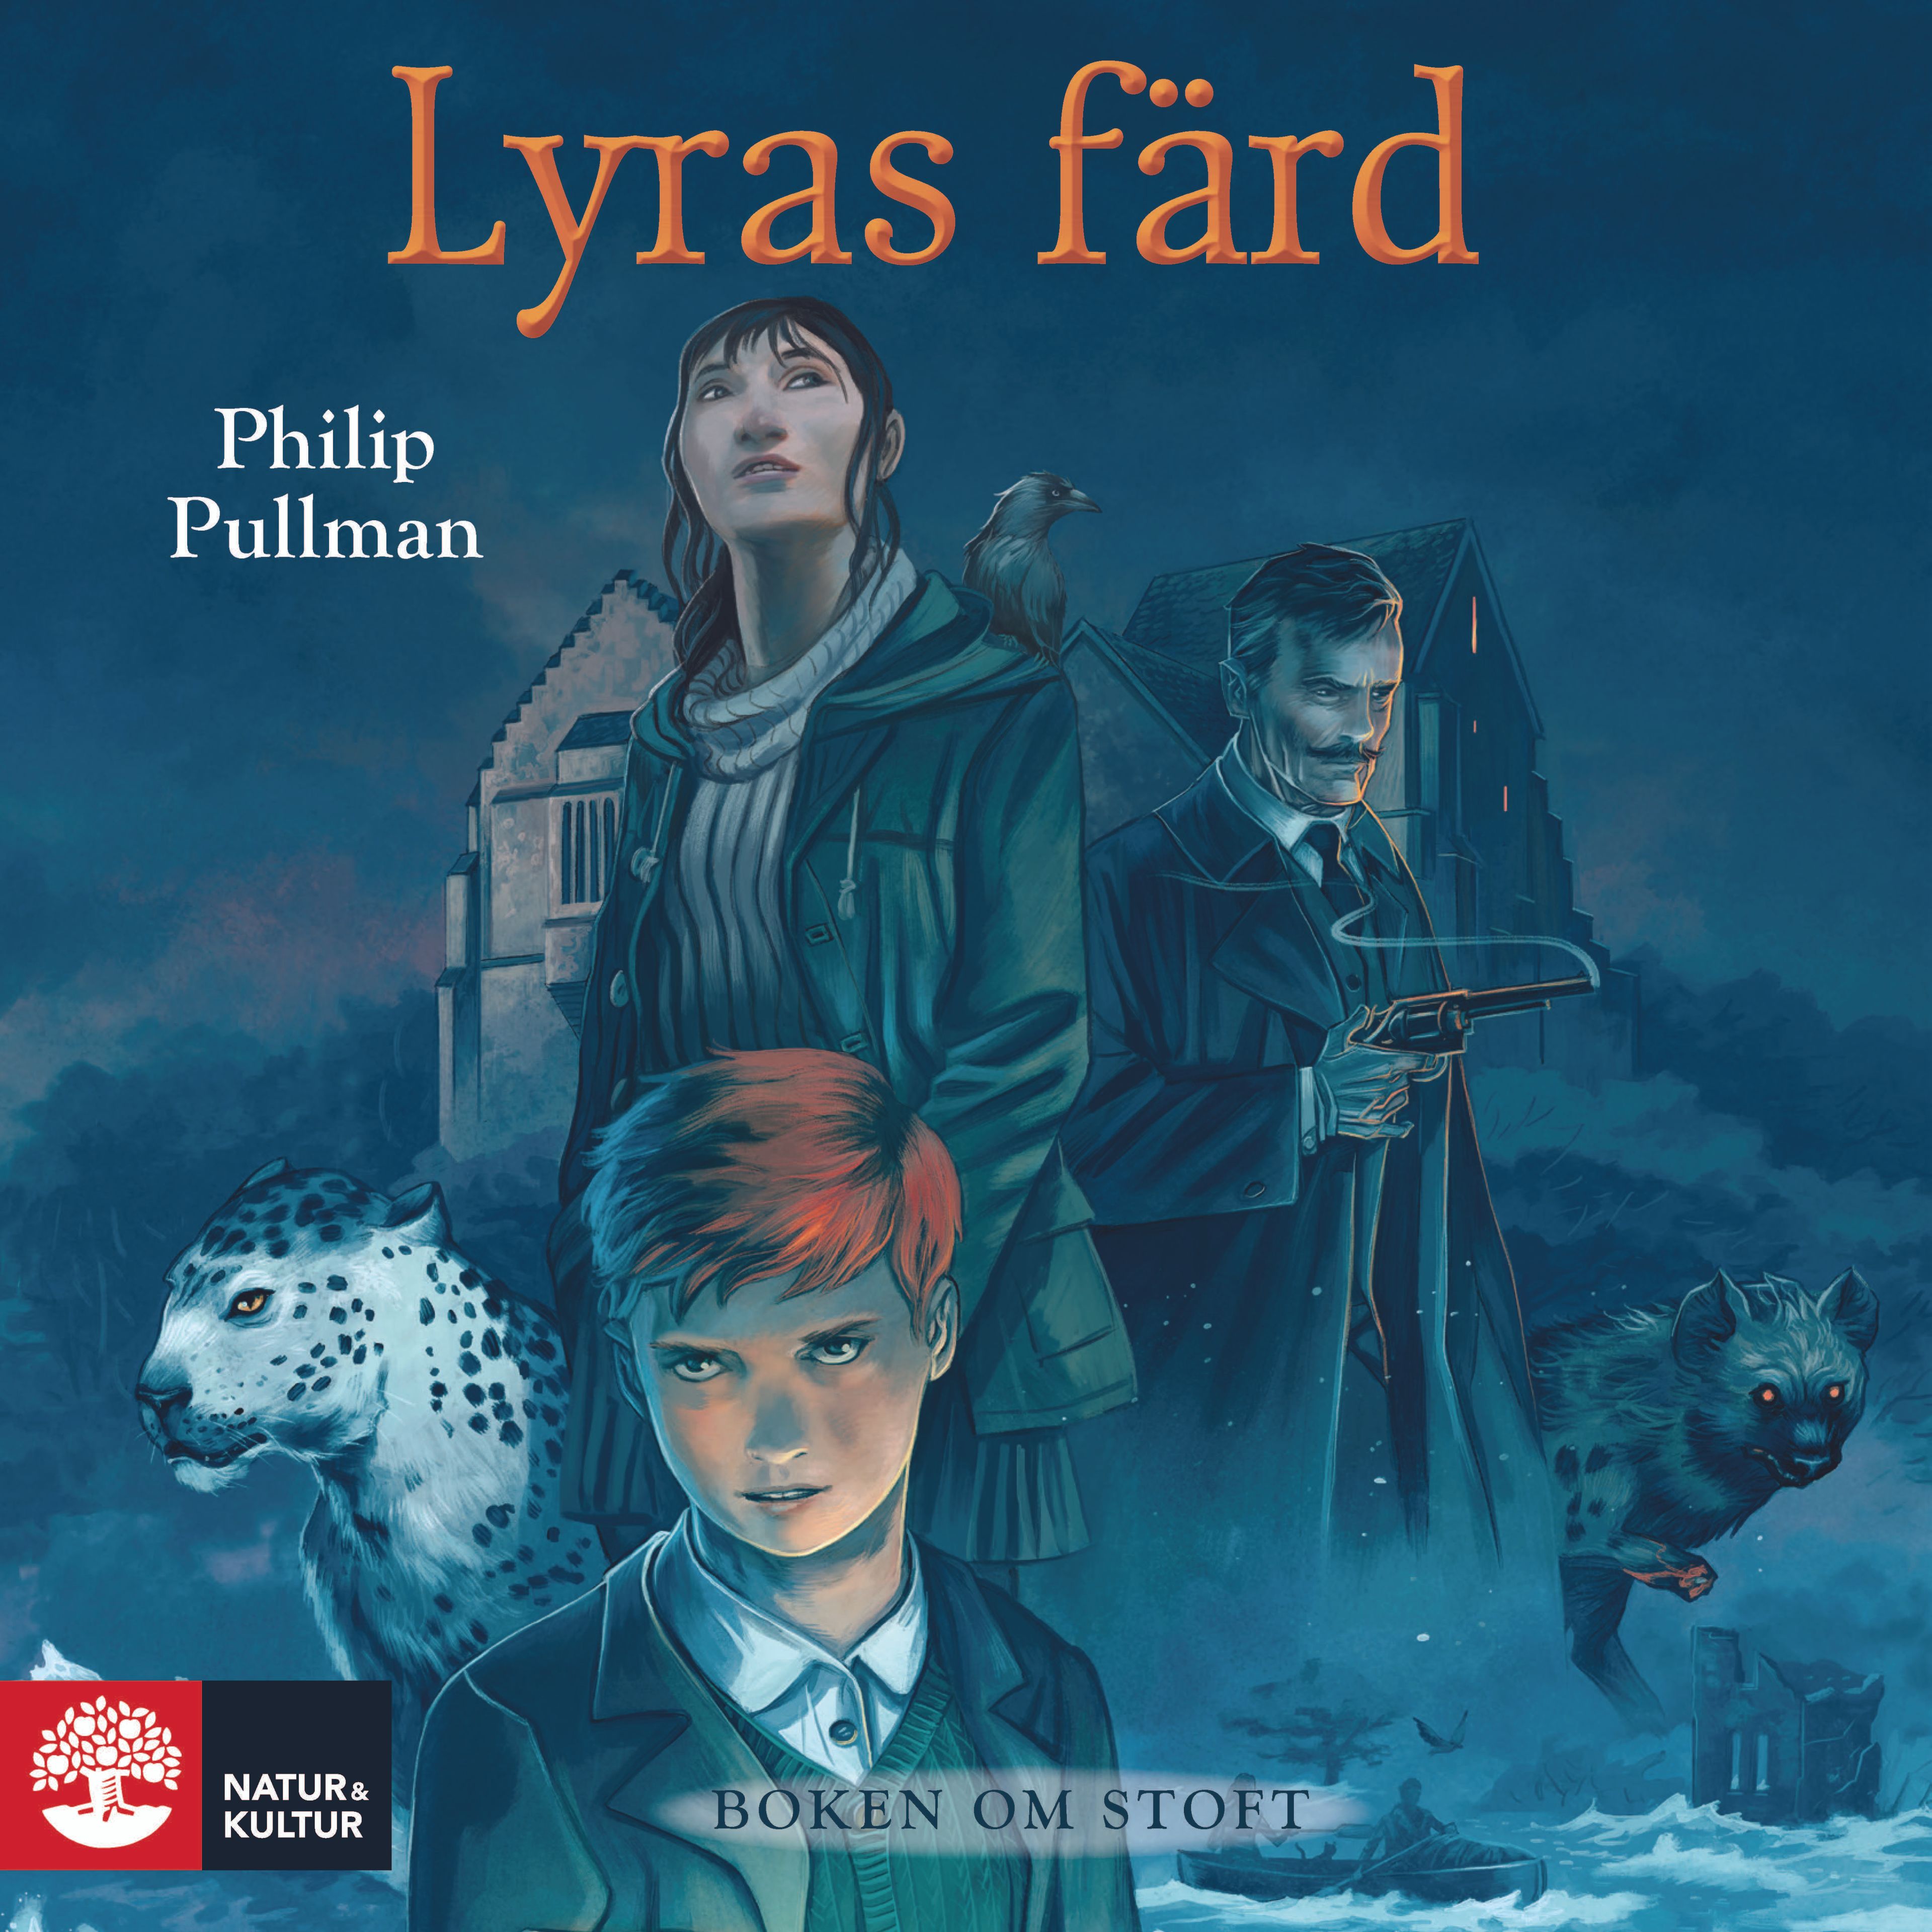 Boken om stoft : Lyras färd, audiobook by Philip Pullman